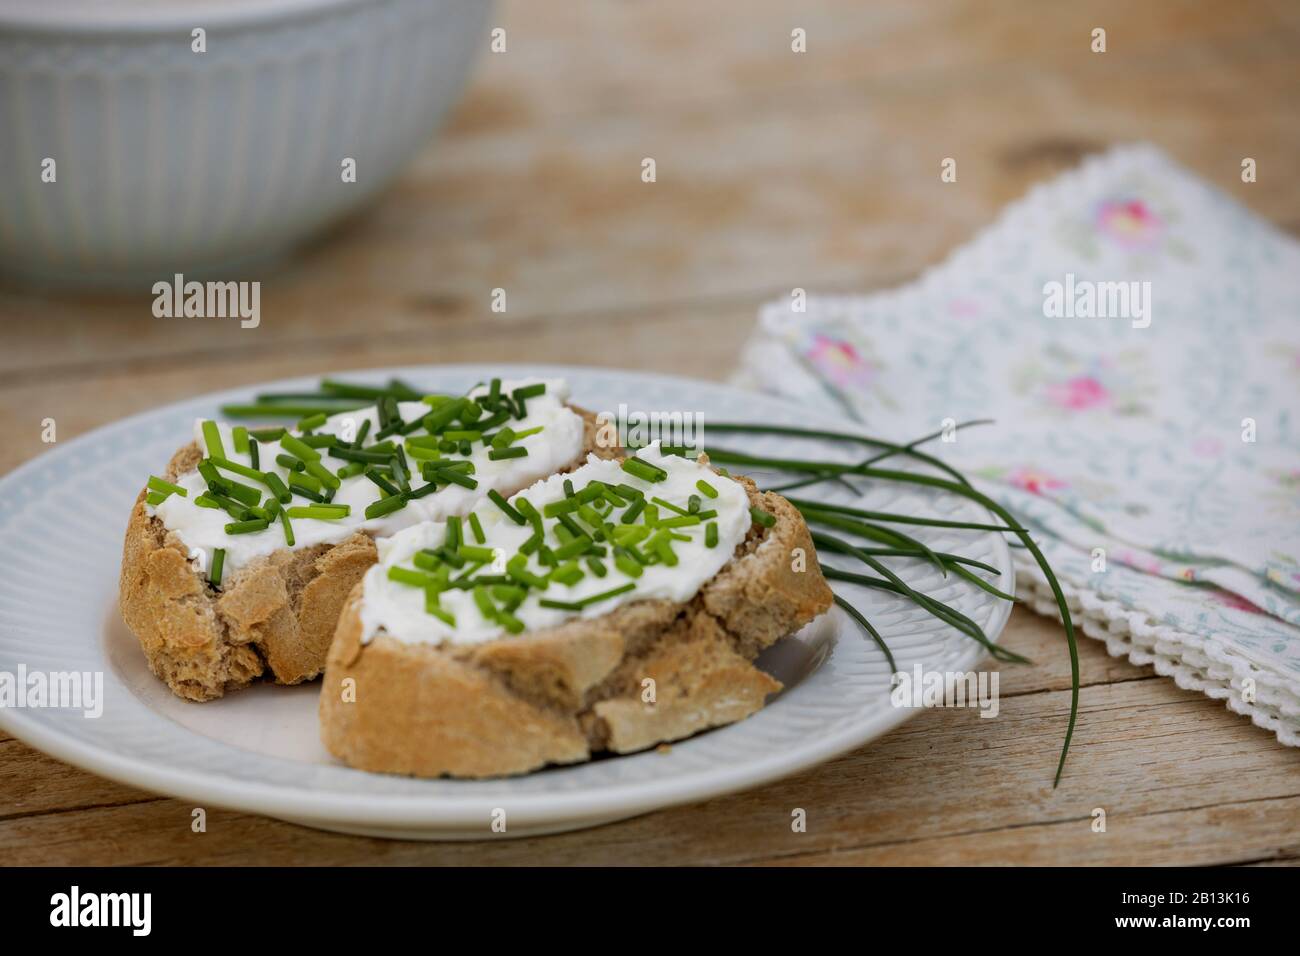 Erba cipollina, porro di sabbia (Allium schoenoprasum), fette di pane con cagliata e erba cipollina Foto Stock